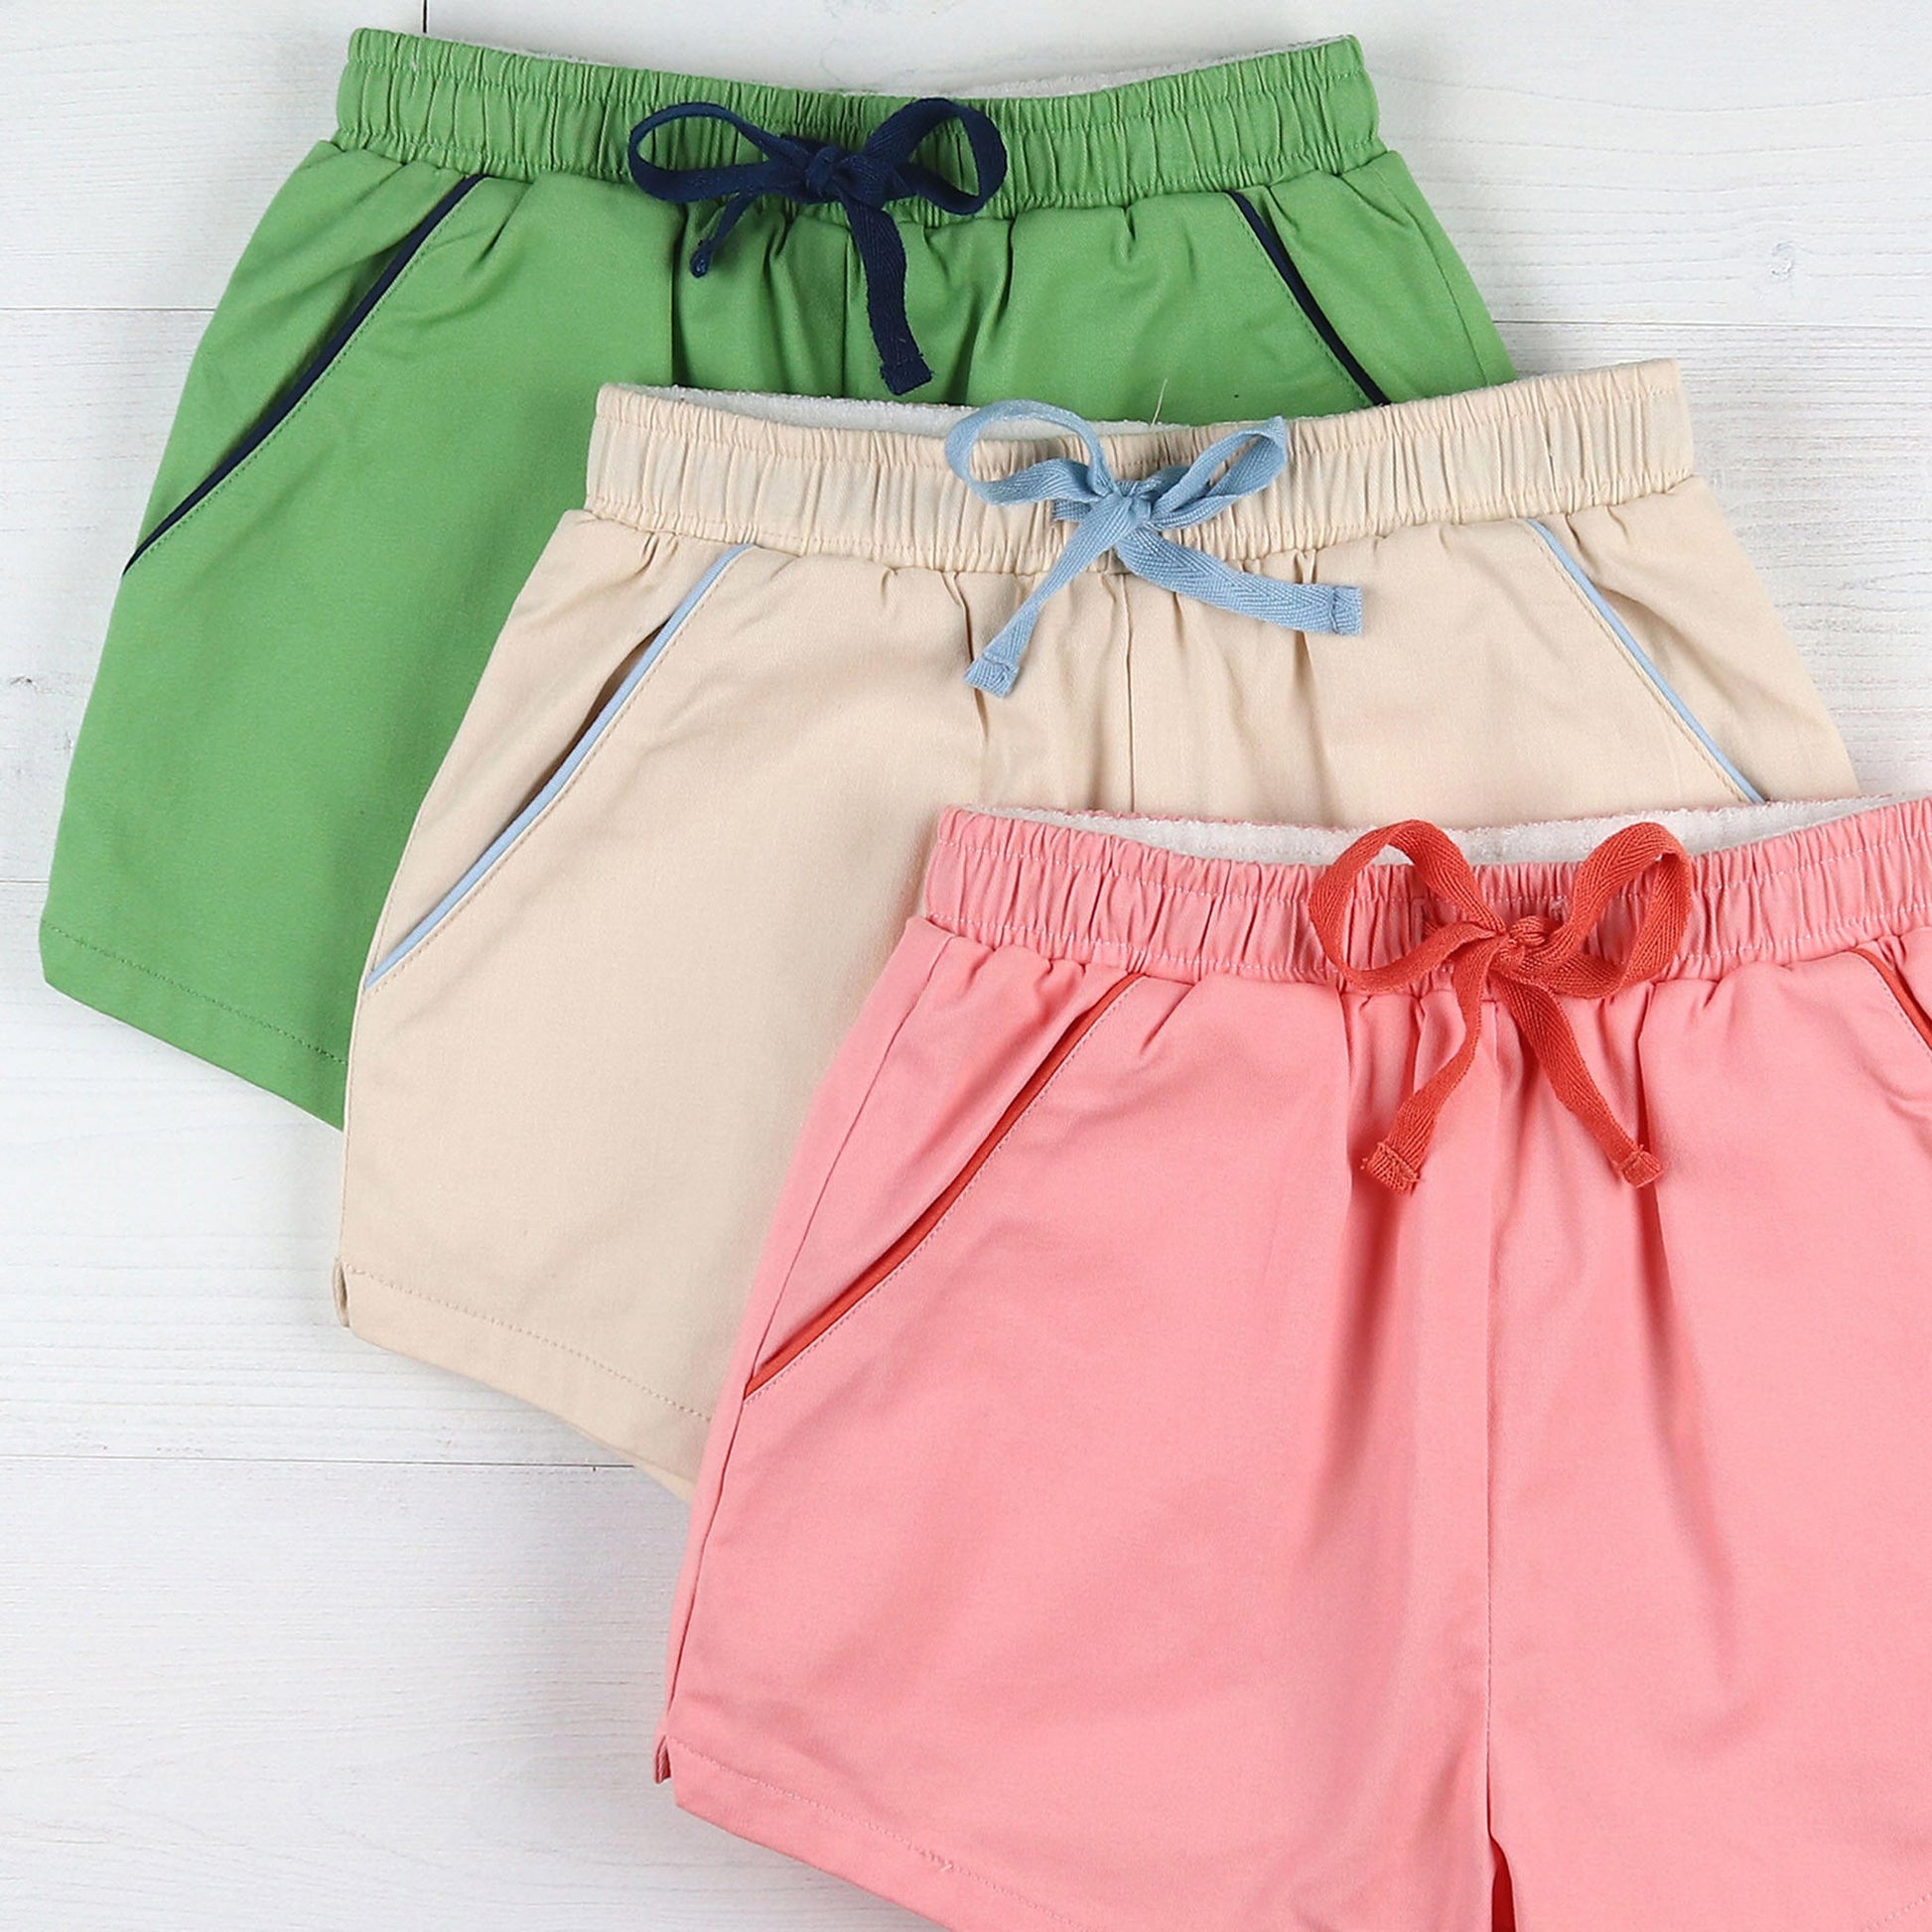 green, khaki and coral shorts